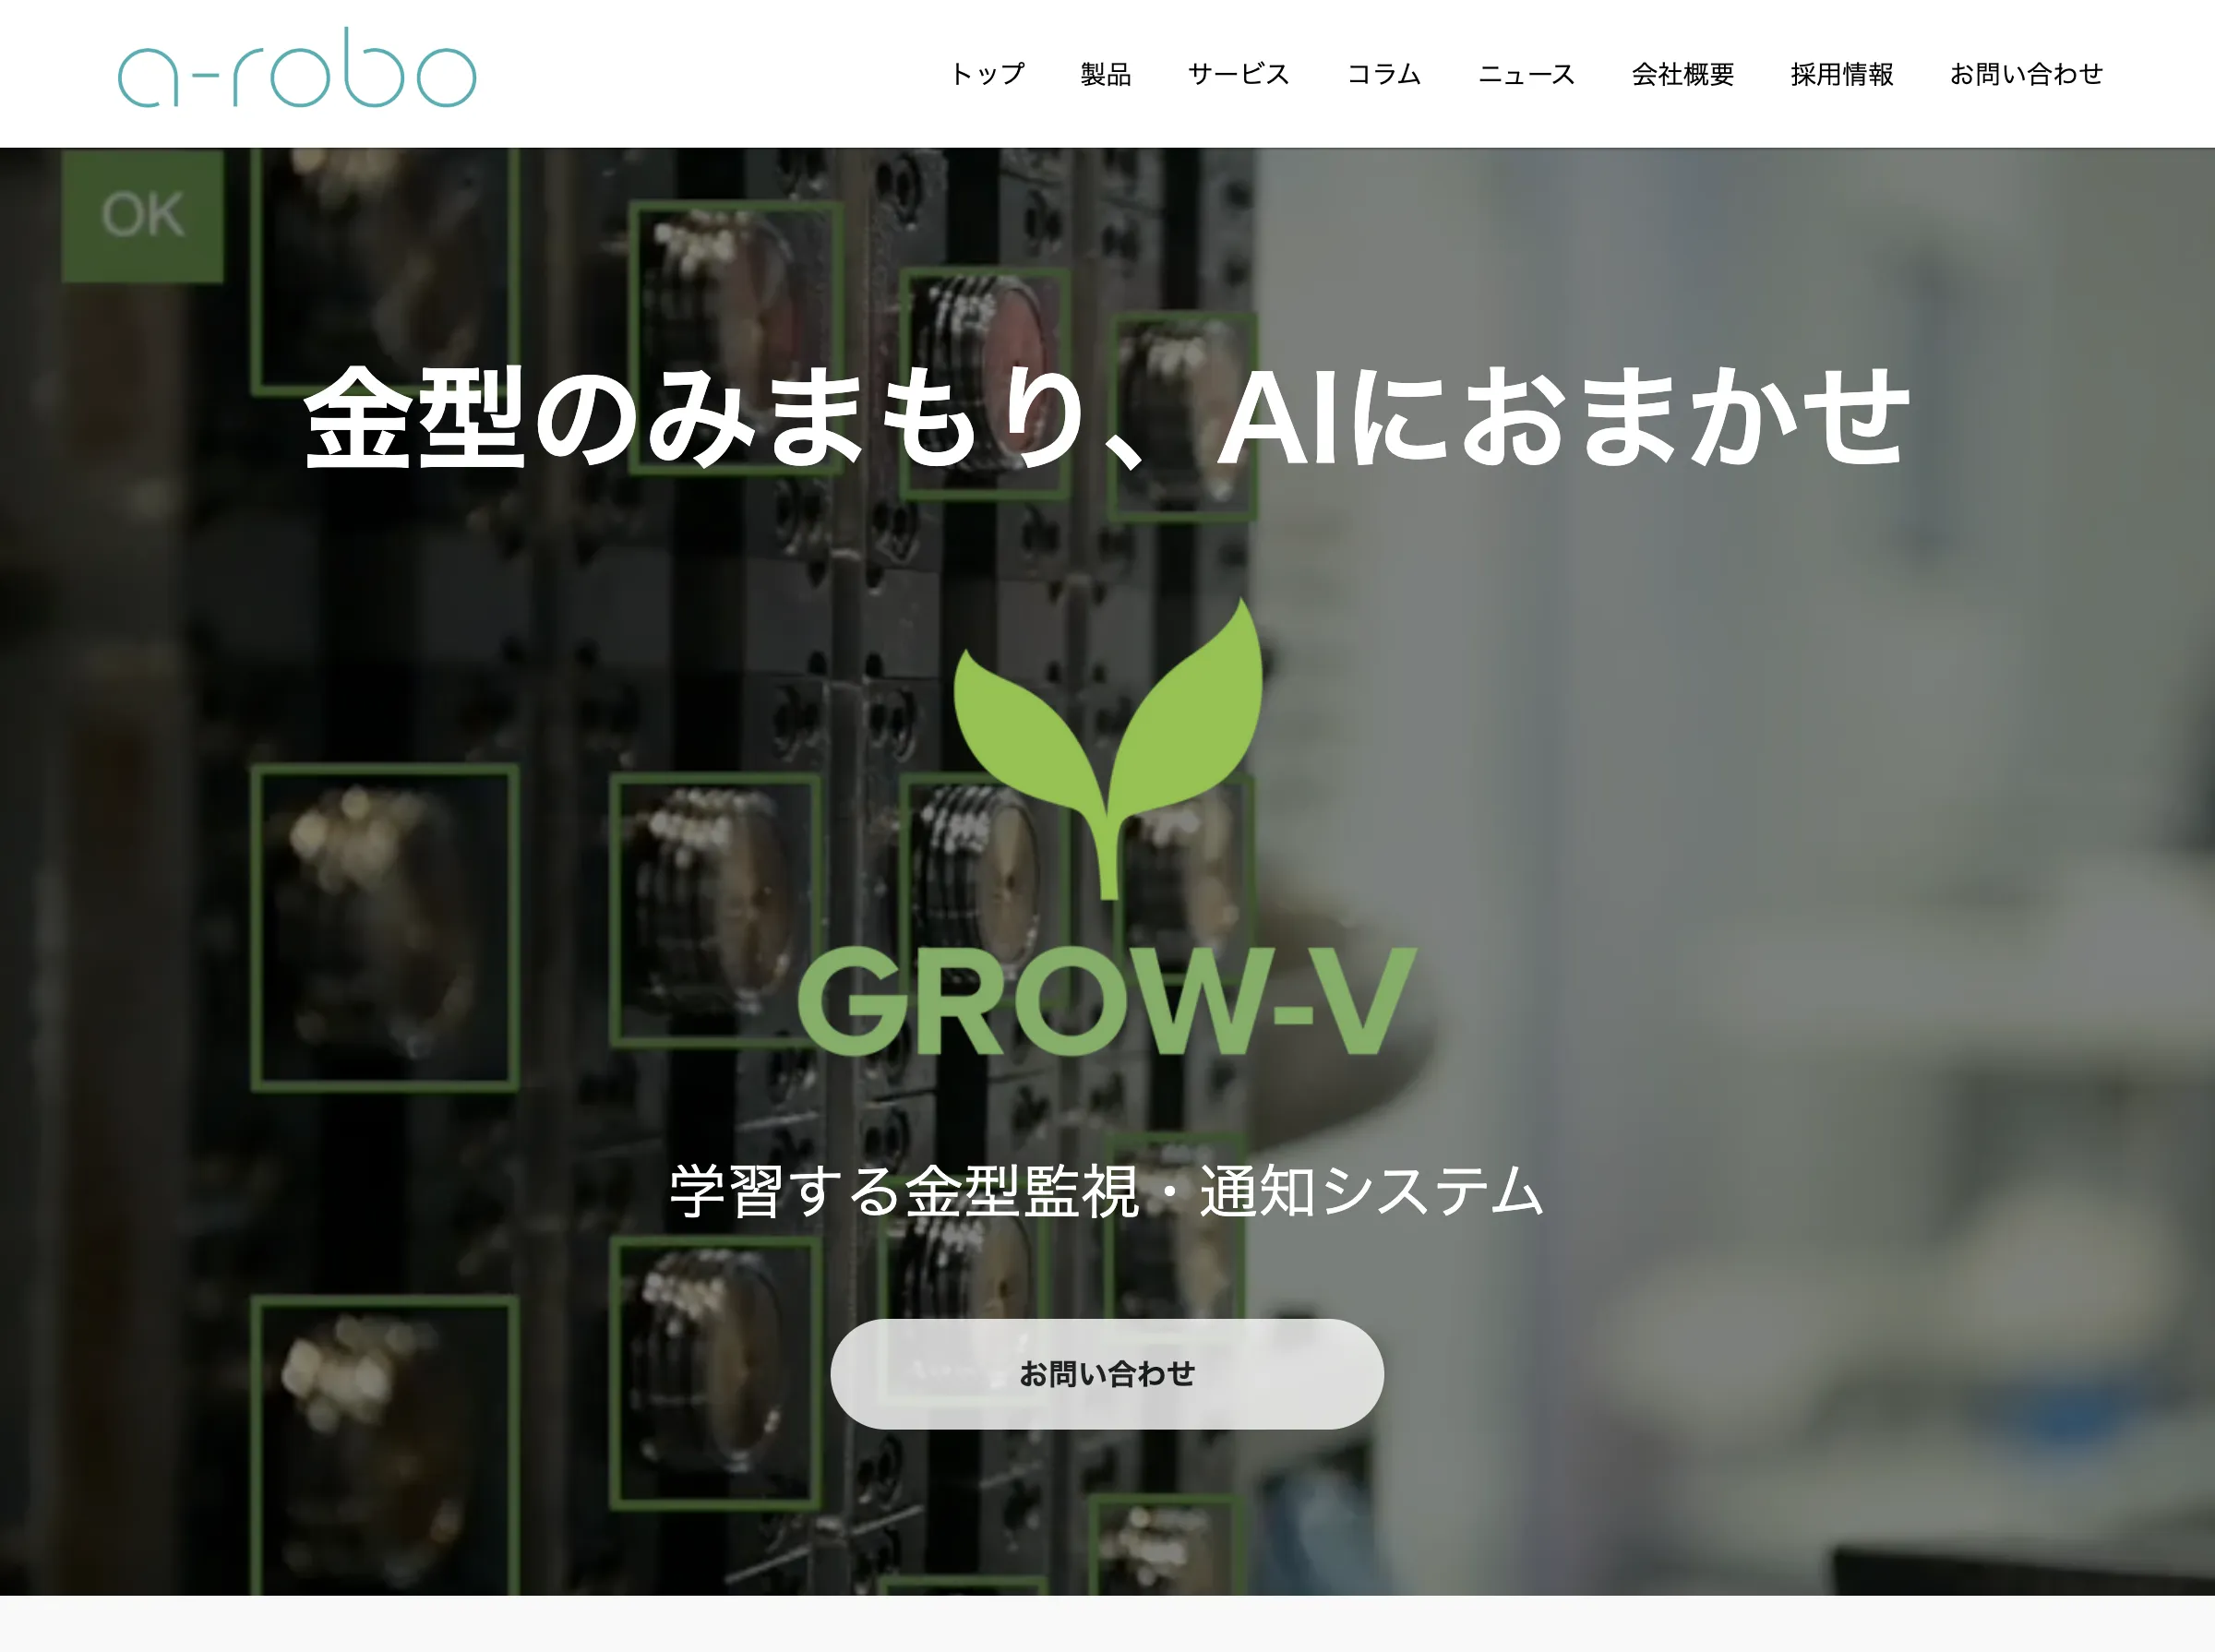 GROW-V(株式会社a-robo)